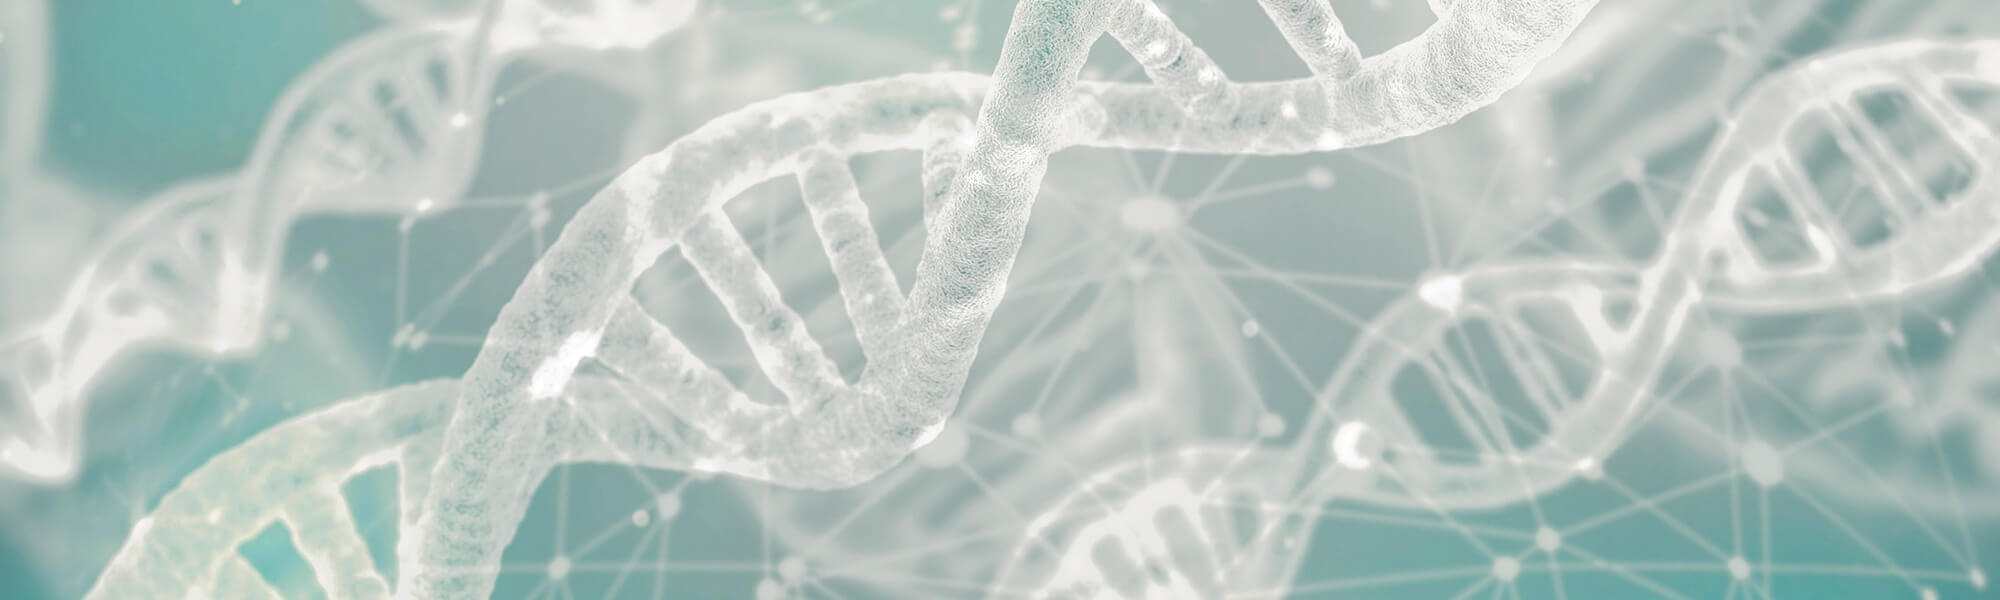 Futuristisches Bild auf dem helle DNA-Spiralen auf grünem Hintergrund zu sehen sind.